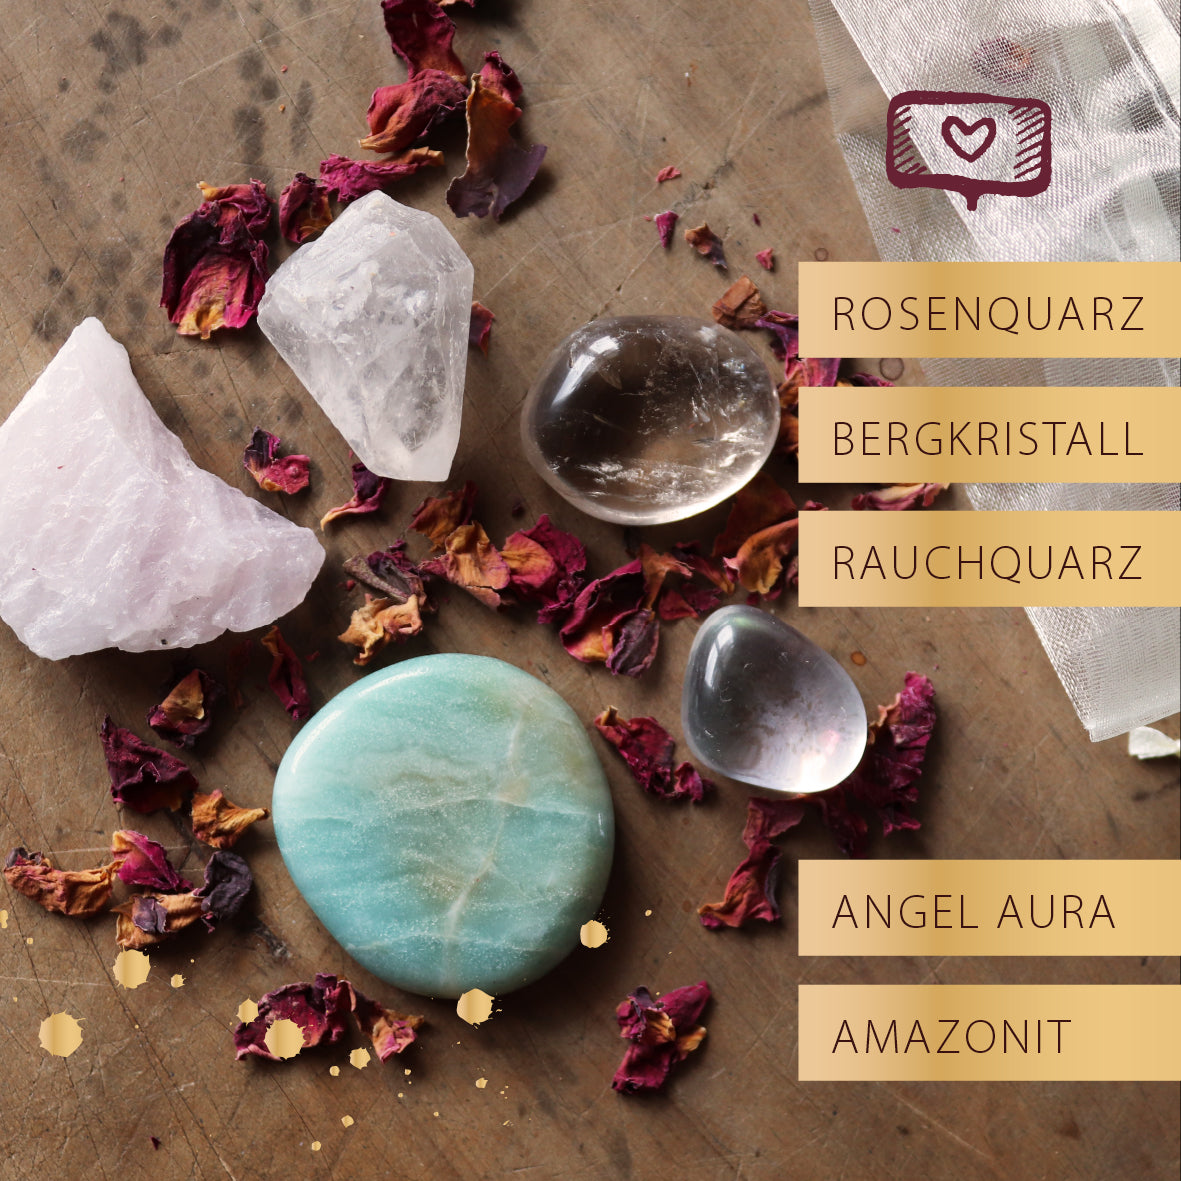 Rauchquarz, Rosenquarz, Bergkristall, Amazonit und Angel Aura als Set mit Rosenblüten